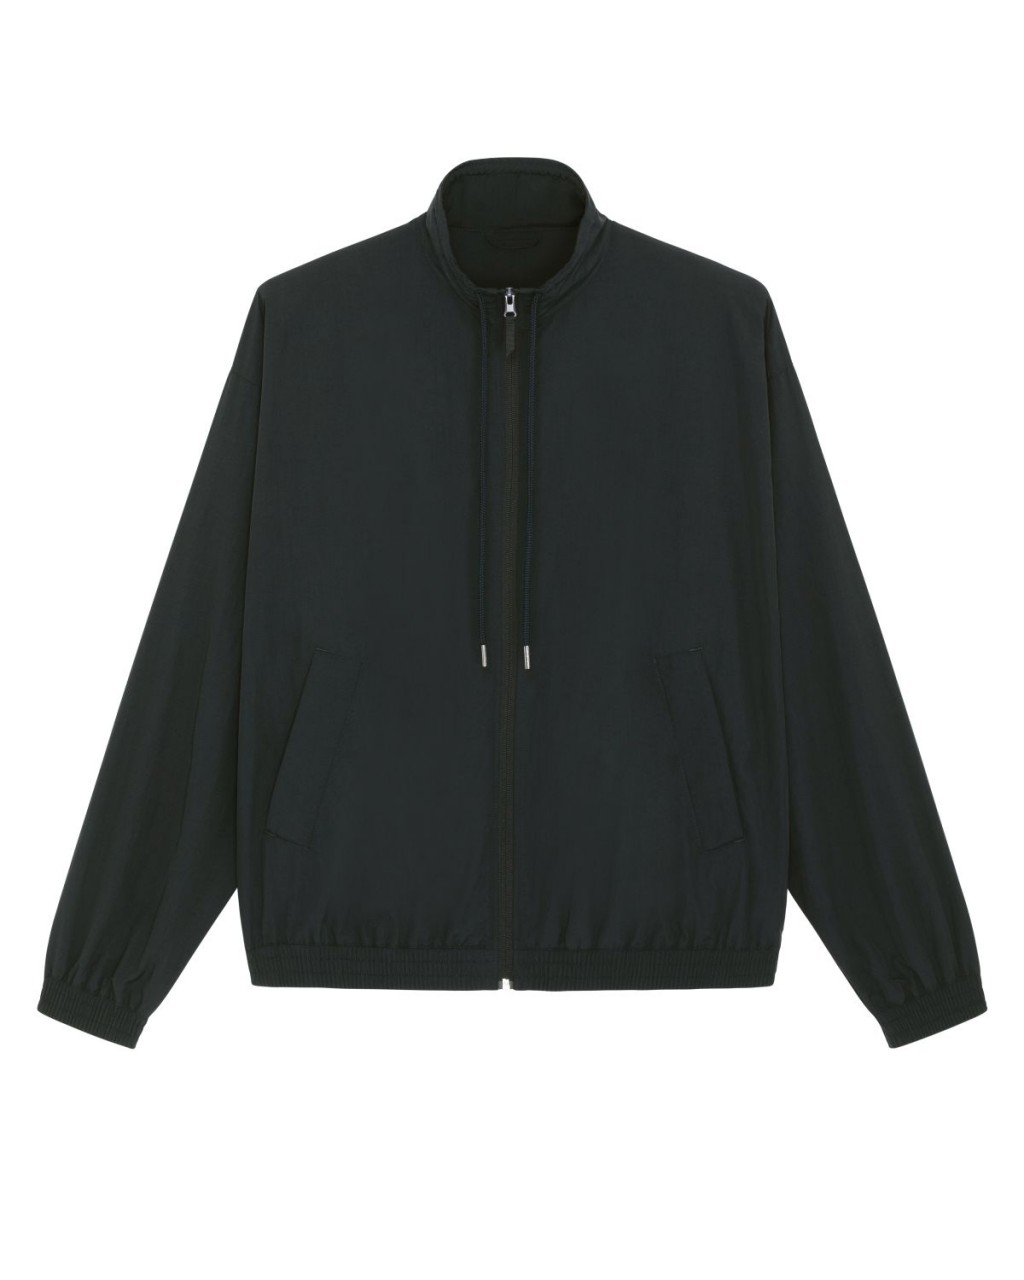 Urban Jacket Black - gw Basics - NEU